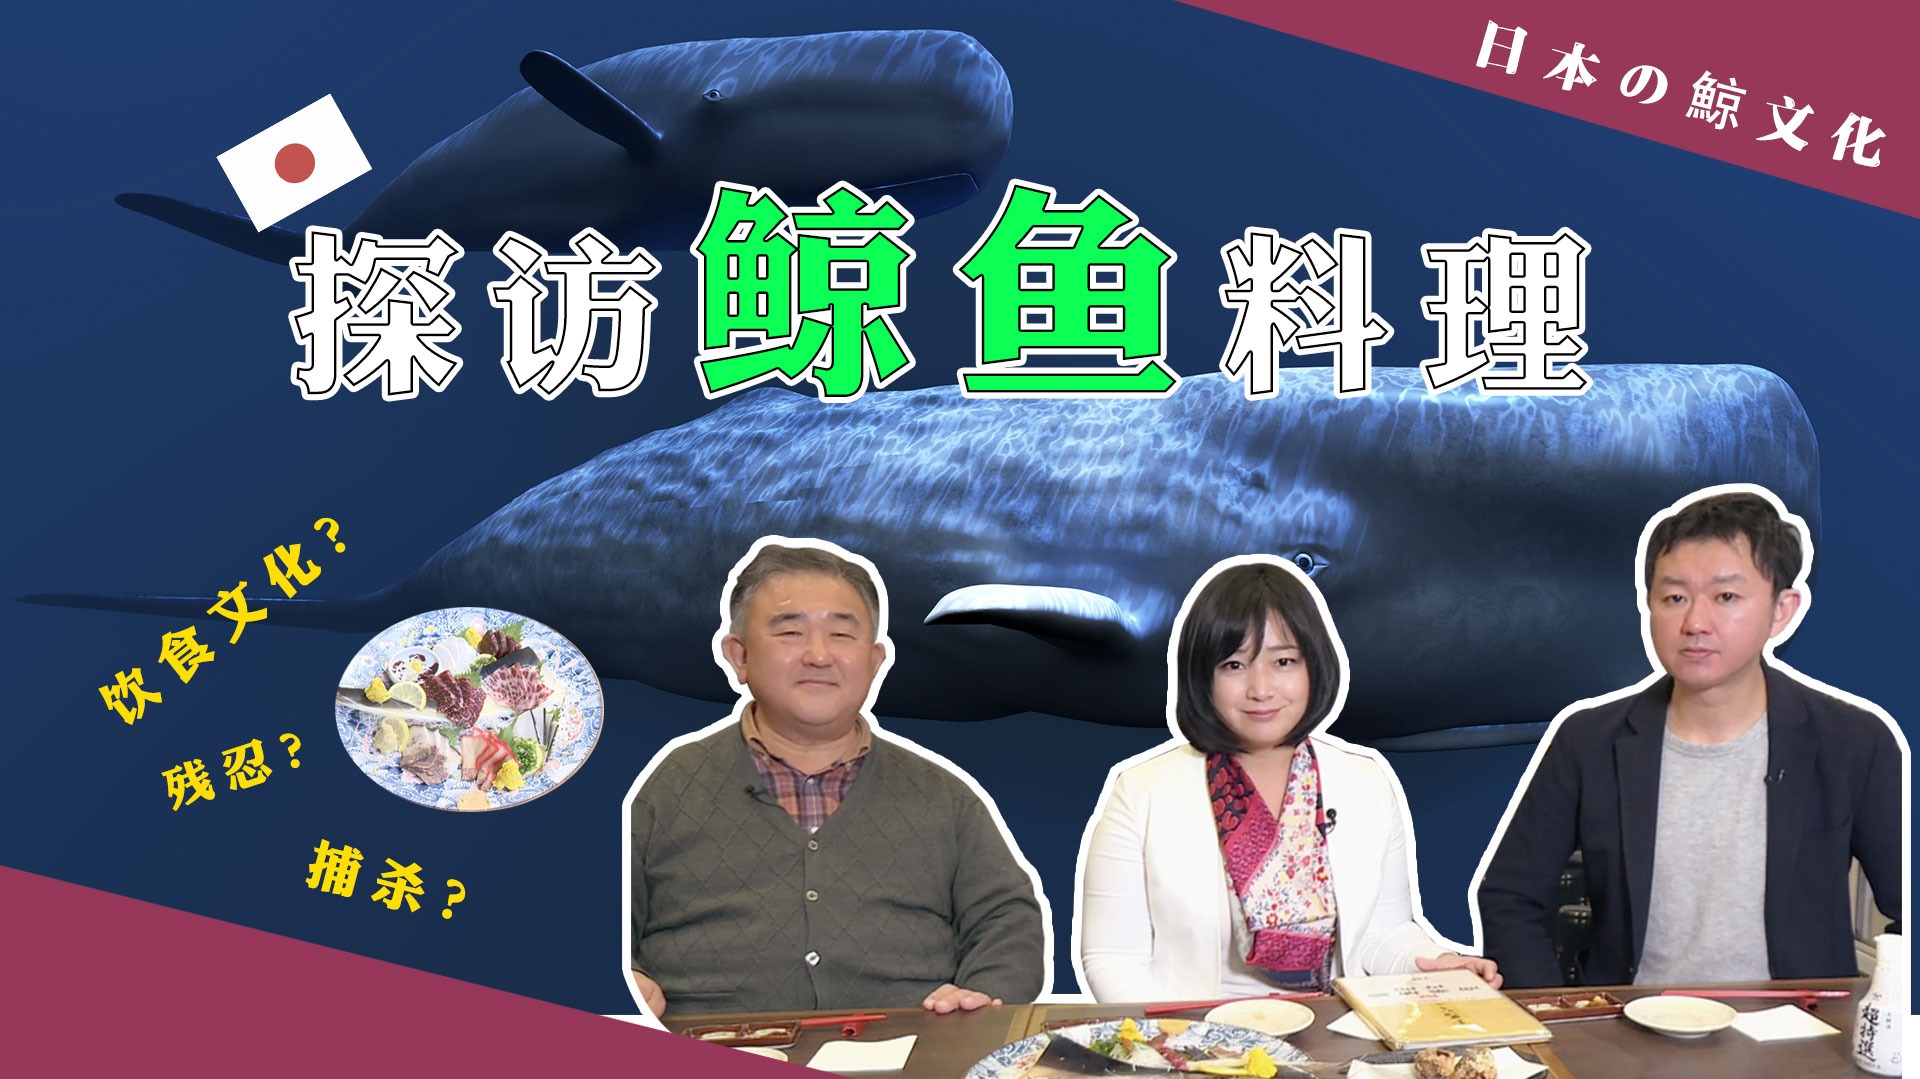 李淼的日本观察106:日本人真的爱吃鲸鱼肉？凤凰记者首次品尝 